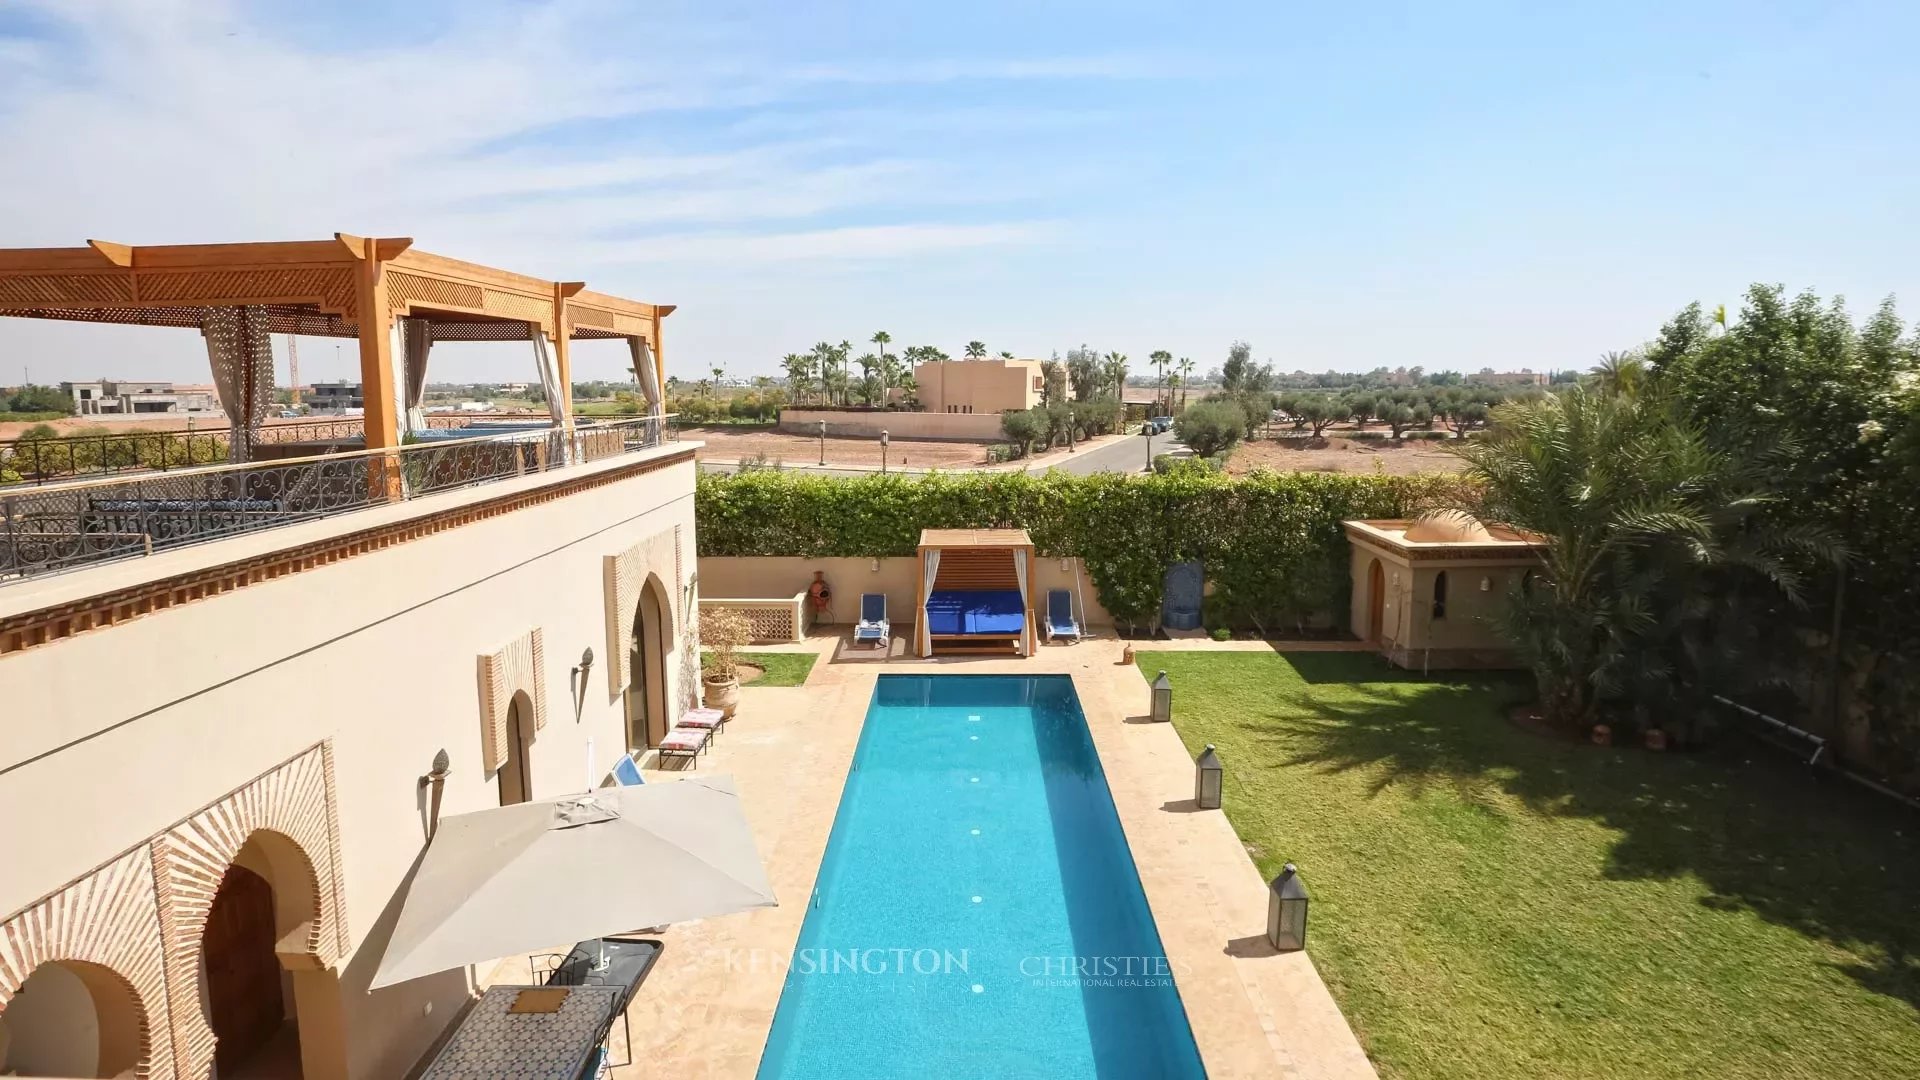 Villa Matti in Marrakech, Morocco